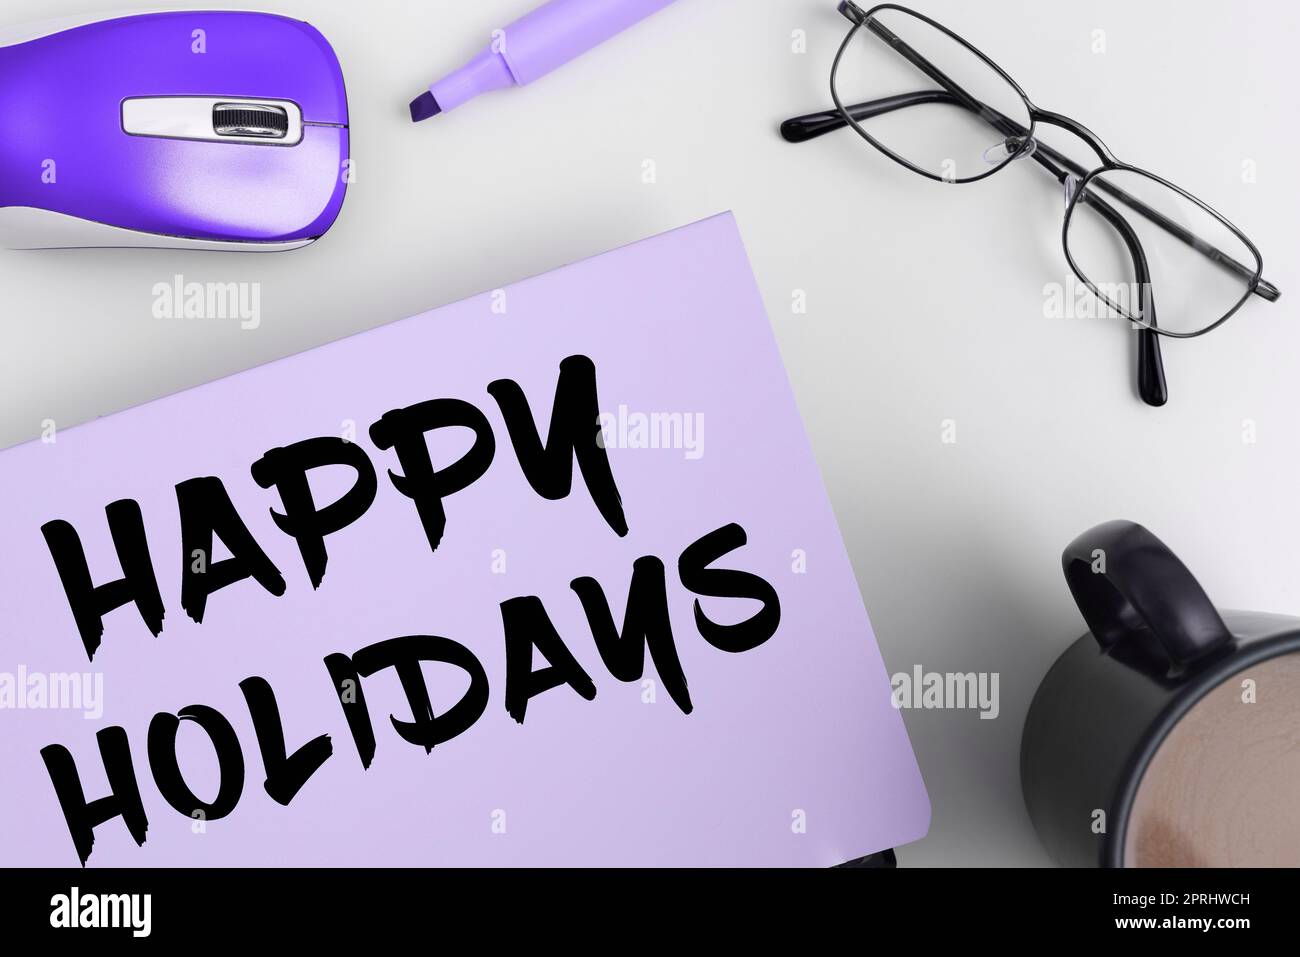 Texte montrant l'inspiration Happy Holidays, salutation de concept d'Internet utilisé pour reconnaître la célébration de nombreuses vacances Banque D'Images